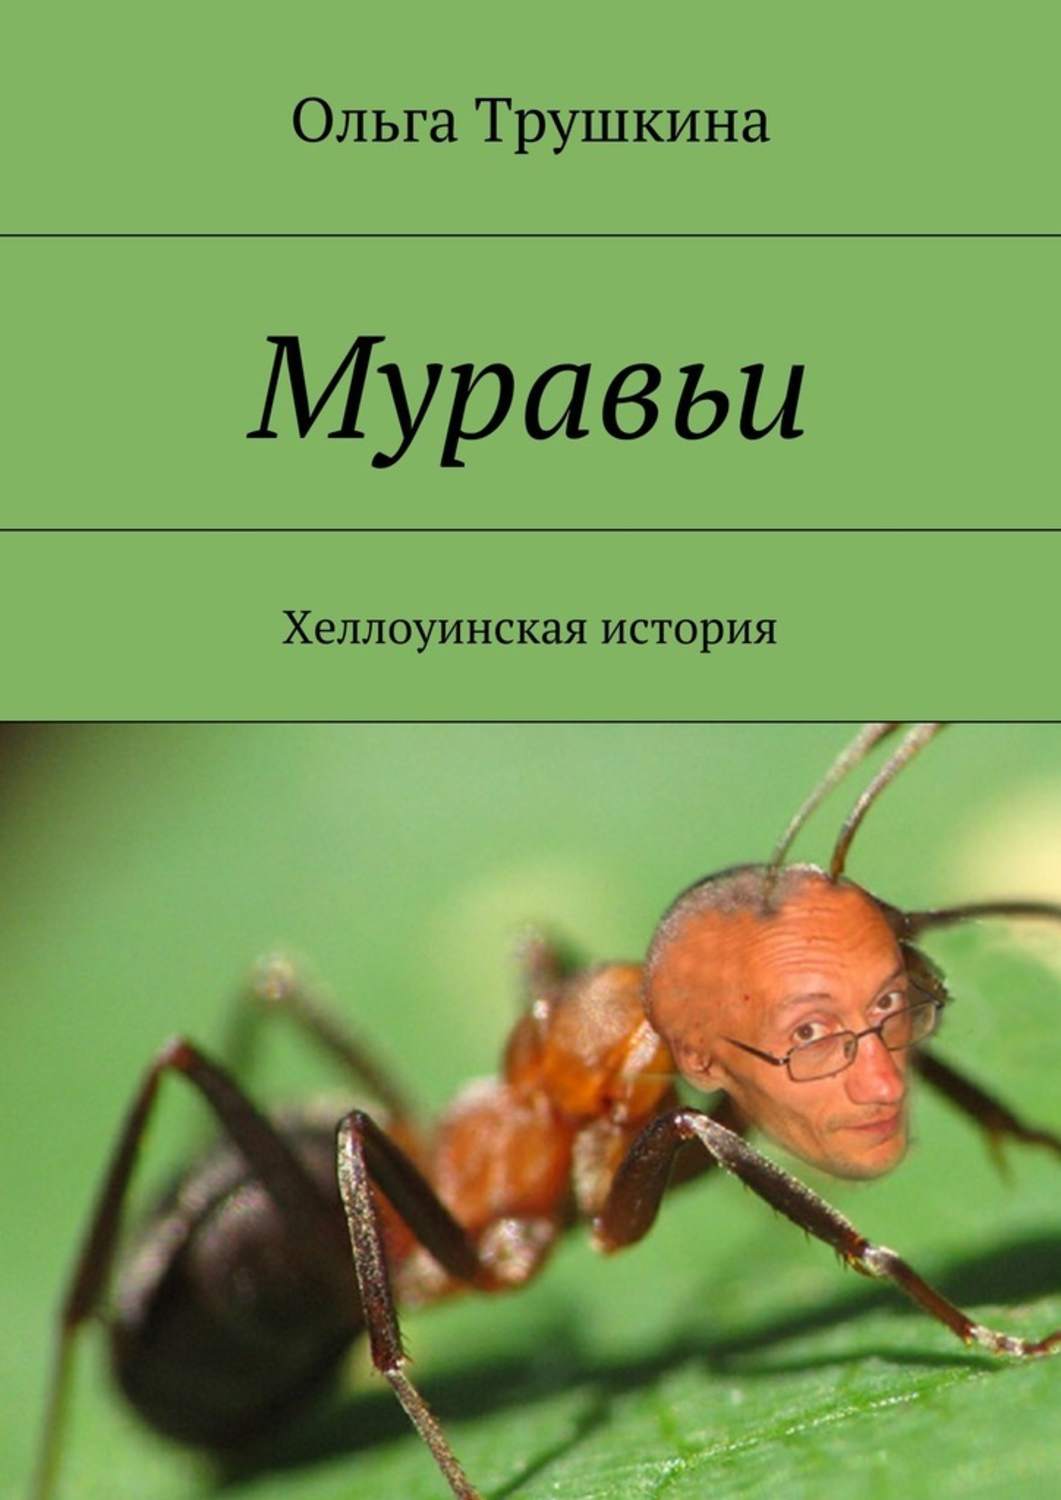 Книга про муравья. Муравьи. Книги о муравьях. Детская книжка про муравьев. Книга про муравьев.